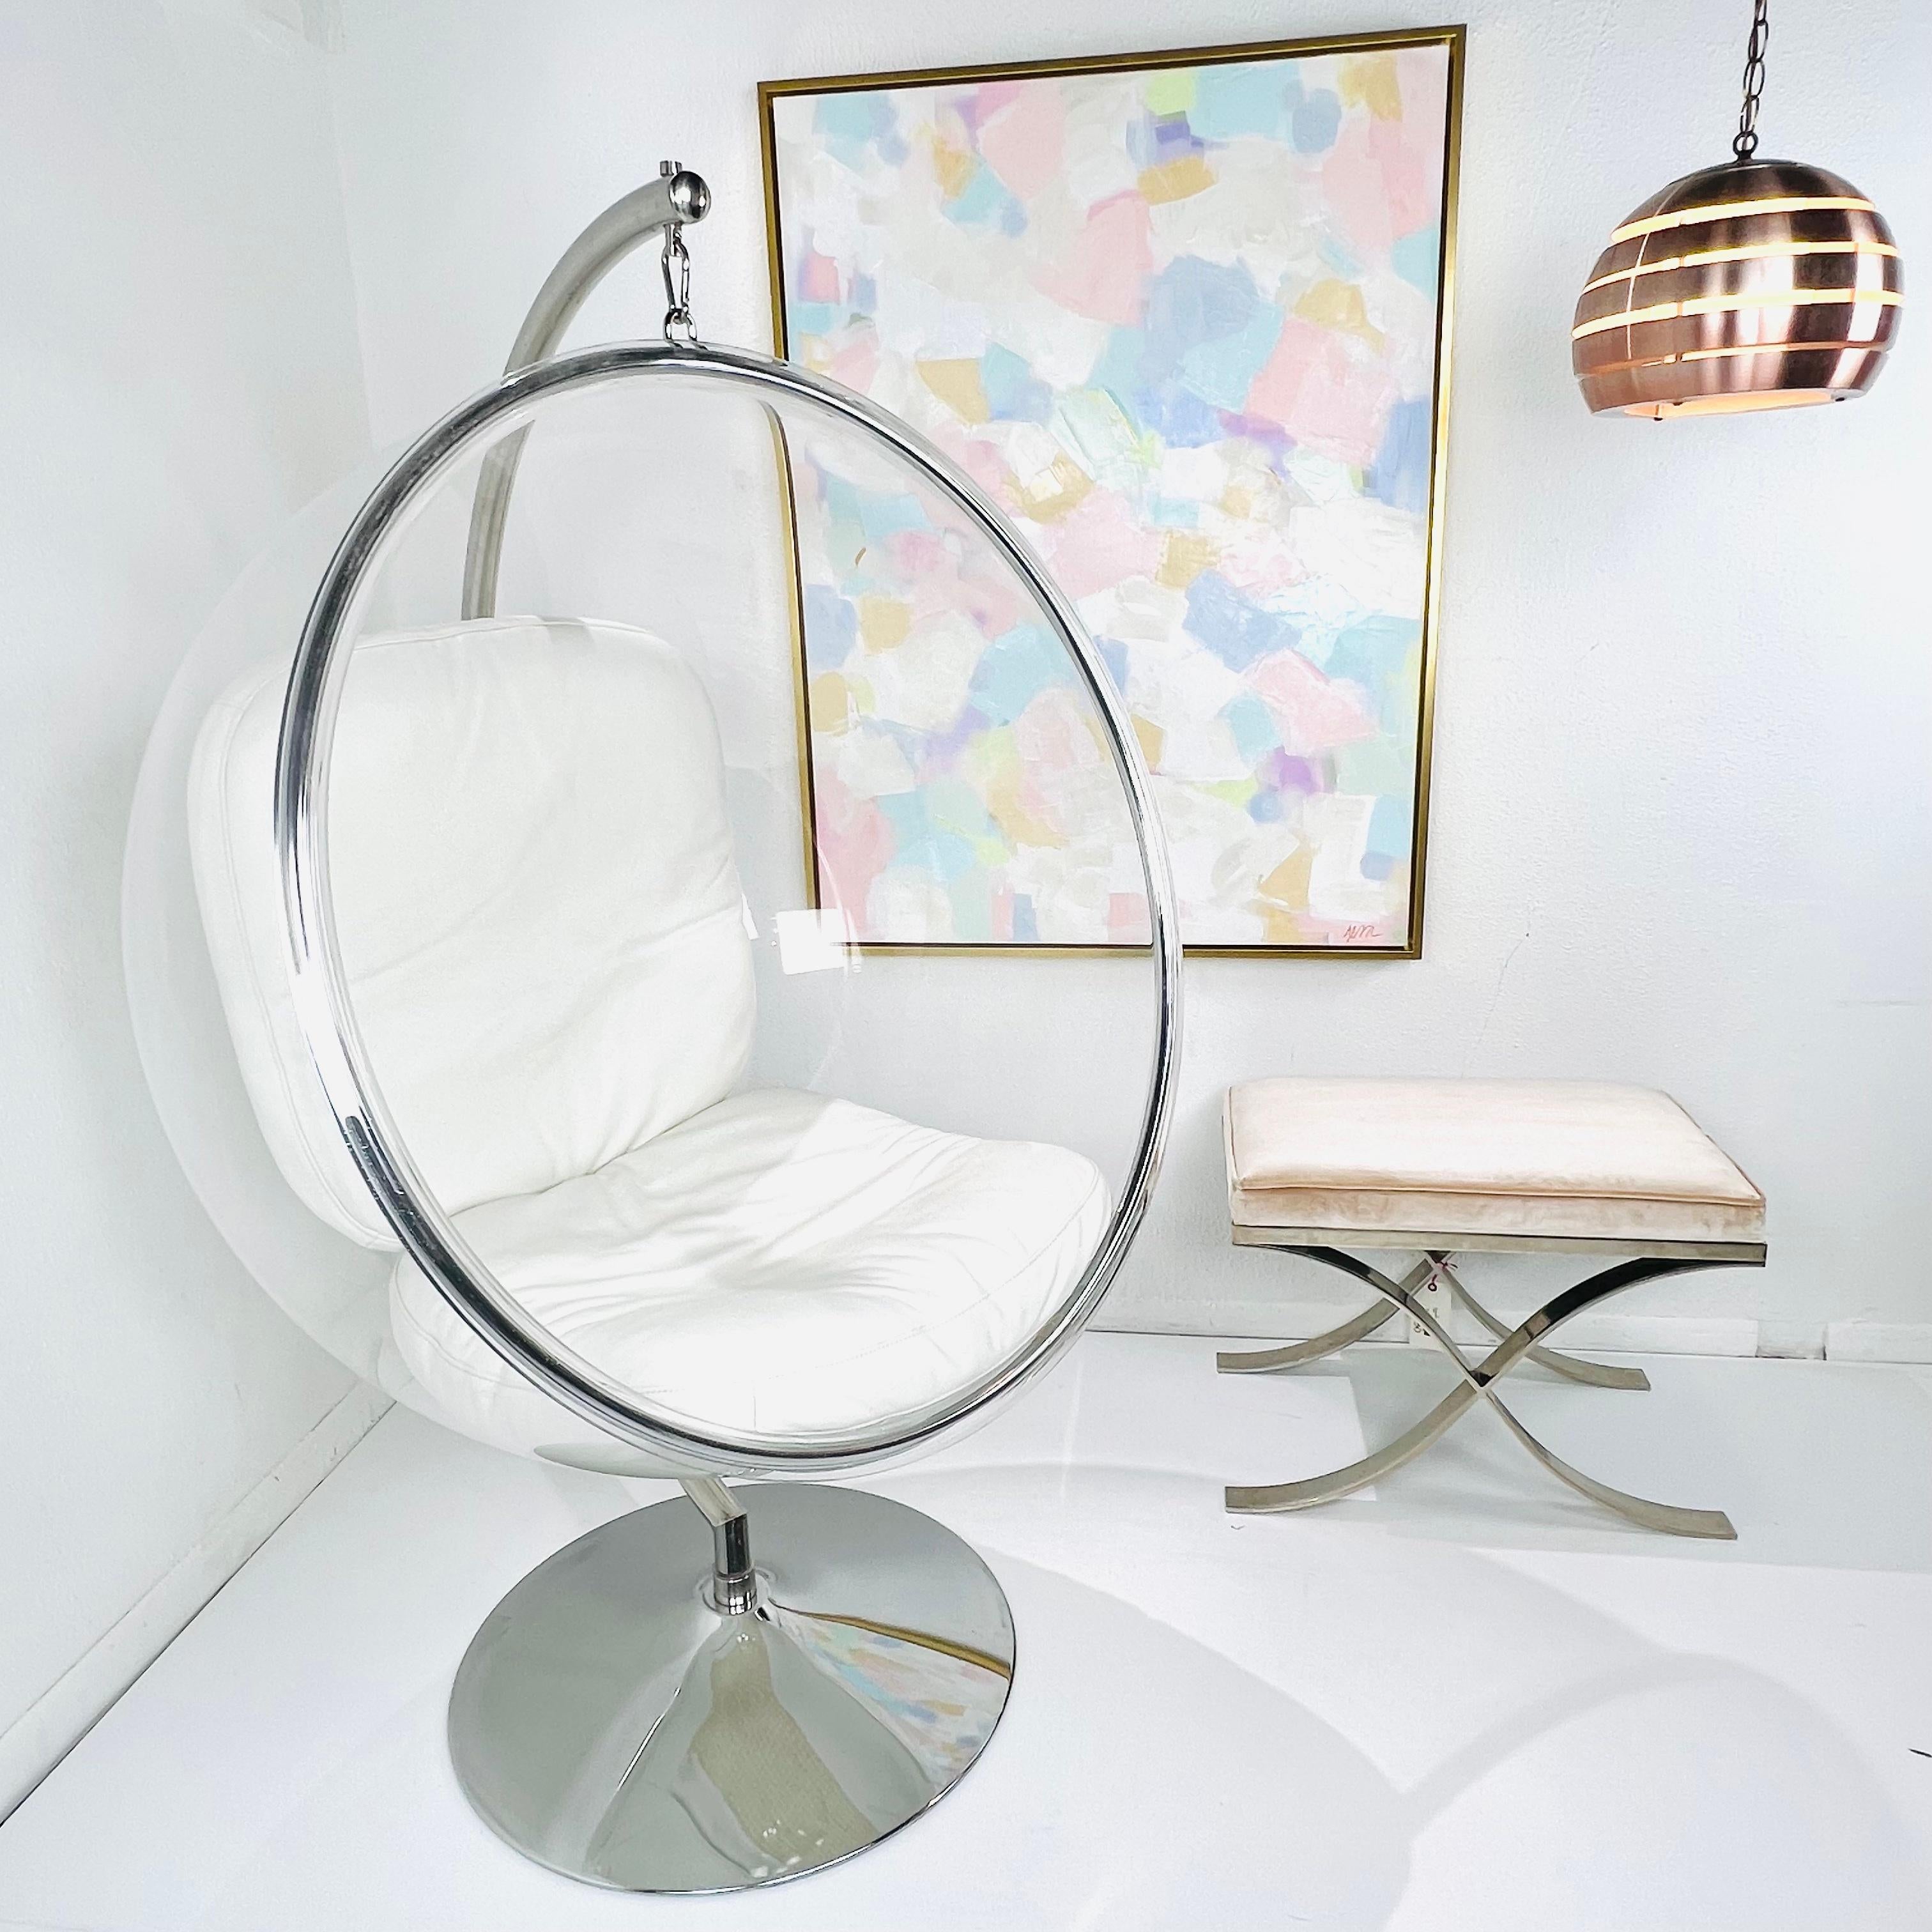 Eero Aarnio entwarf den Originalstuhl Bubble 1968, als er in Finnland lebte. Das industriell-modernistische Design des Stuhls sorgt für ein Sitzerlebnis, das gleichzeitig kapselnd und transparent ist. Das schwebende Gefühl wird durch die Aufhängung